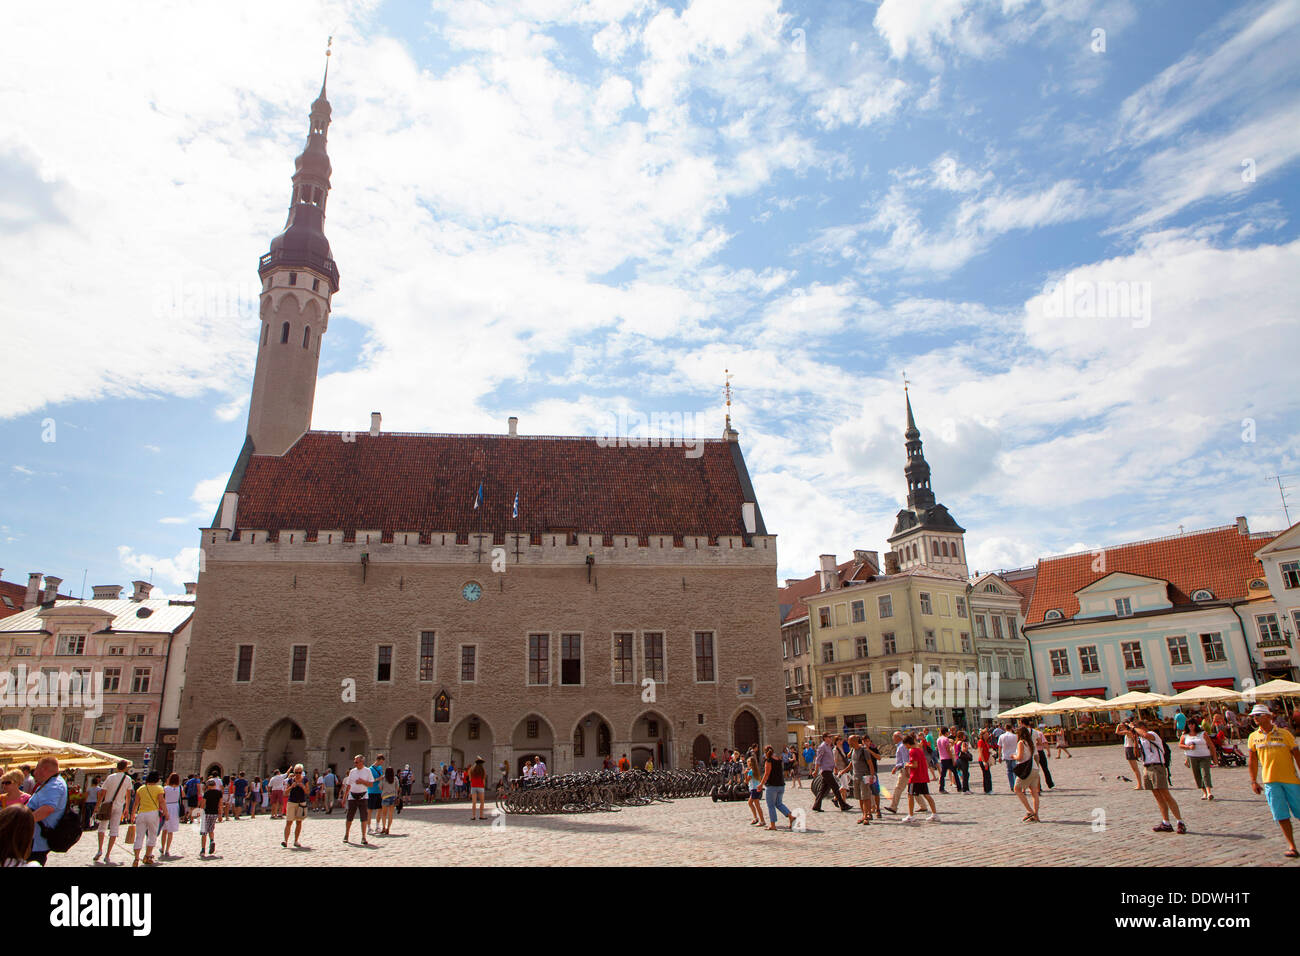 Vieille ville médiévale de Tallinn, capitale et plus grande ville d'Estonie, de l'État balte Banque D'Images